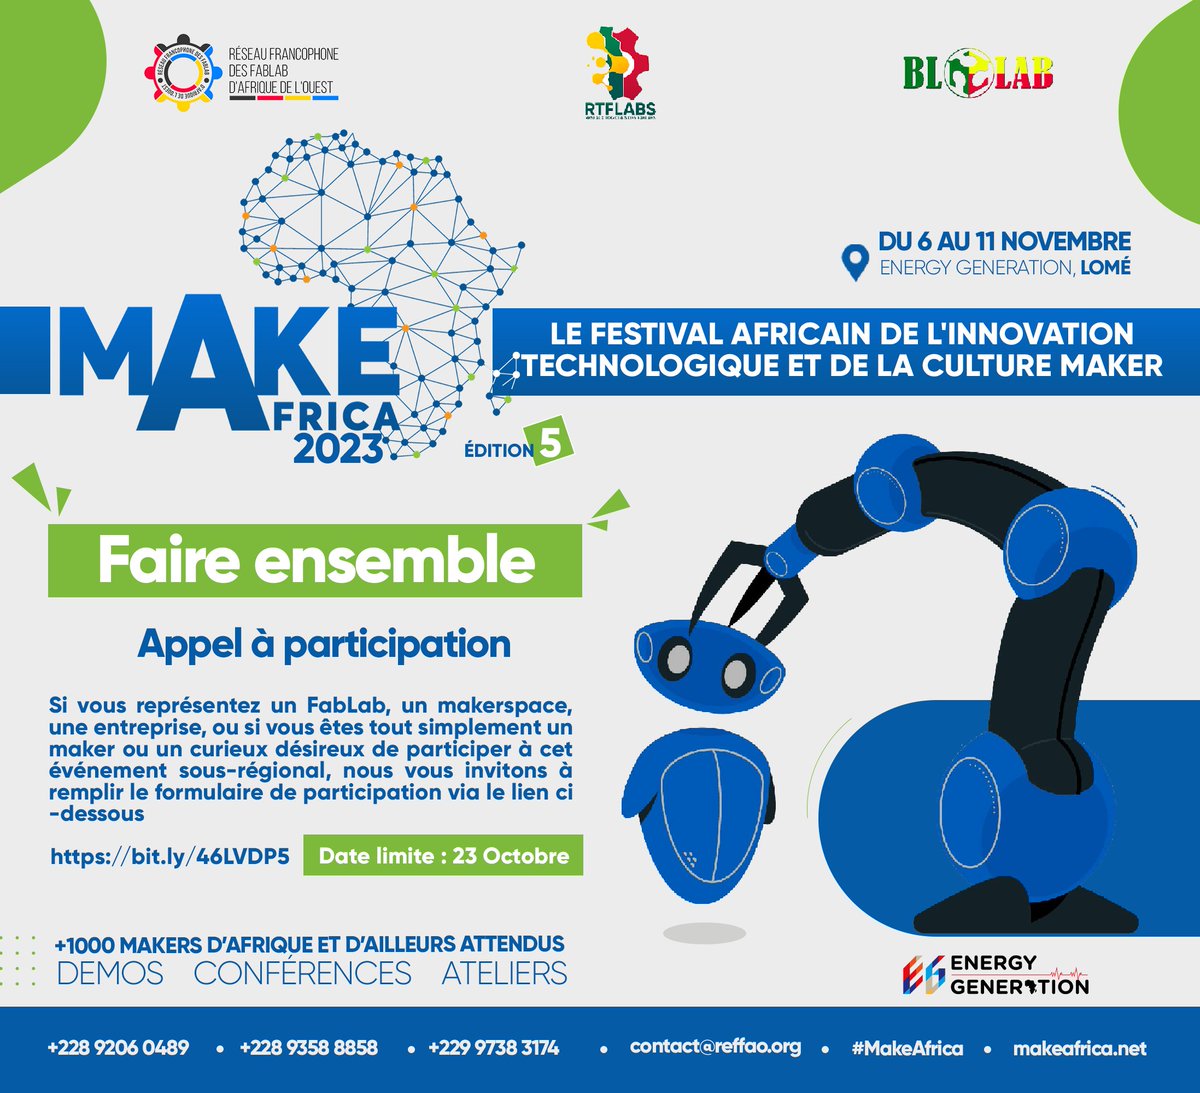 #MakeAfrica, c'est le plus grand festival africain de l'innovation technologique et de la culture maker. La prochaine édition, la 5e, se déroulera du 06 au 11/11/23 à #Lomé au #Togo et s'annonce très inspirante avec +8 pays attendus. makeafrica.net/appel-a-partic… #FaireEnsemble #BloLab